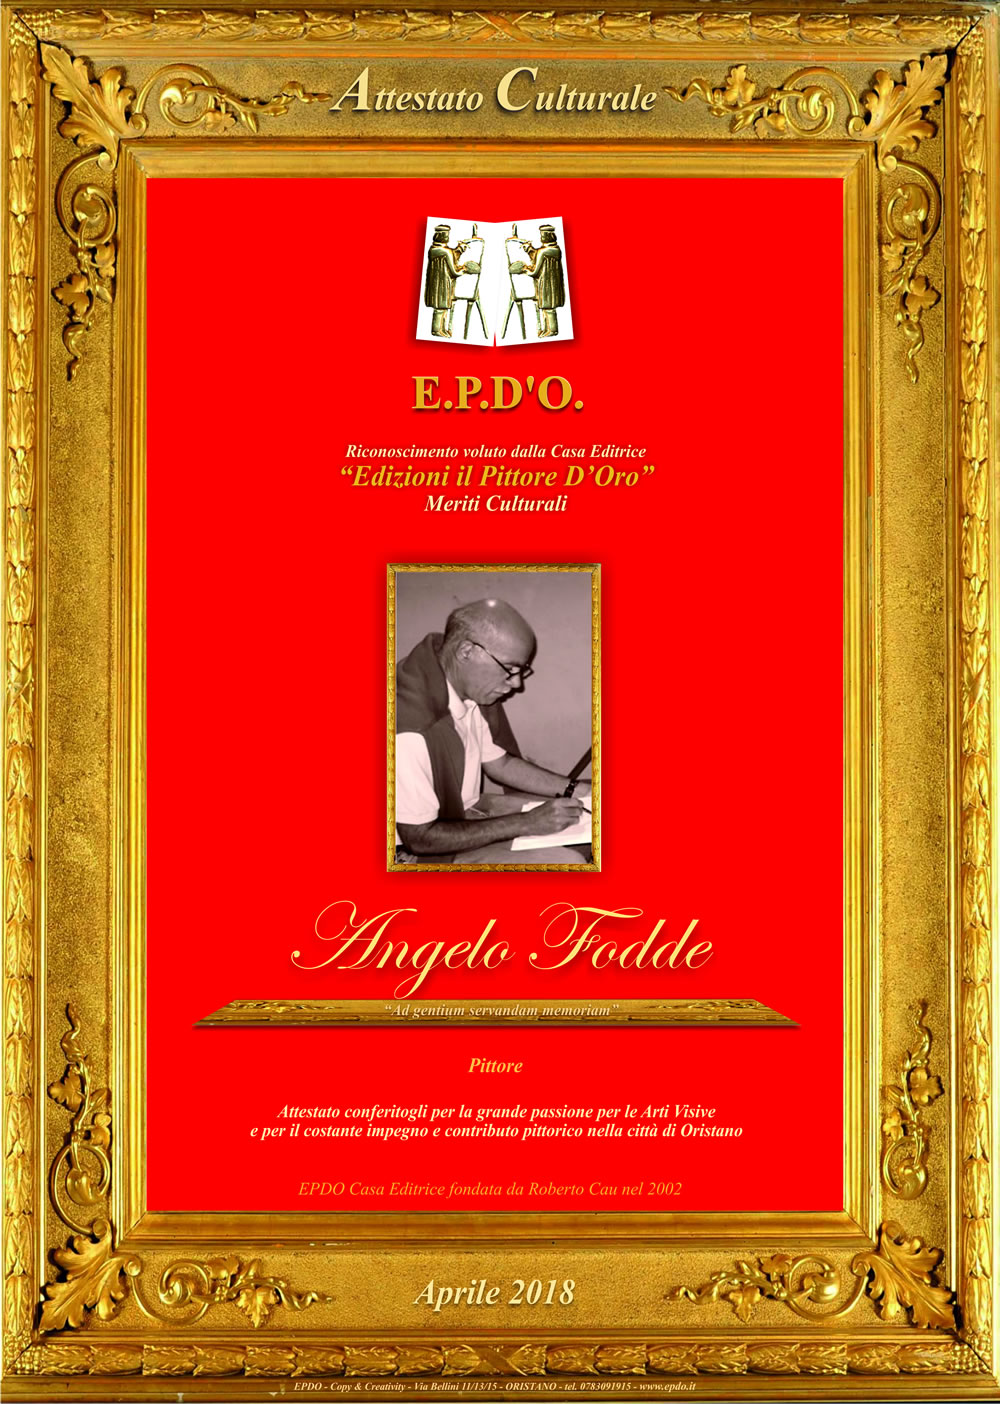 EPDO - Attestato Culturale Angelo Fodde